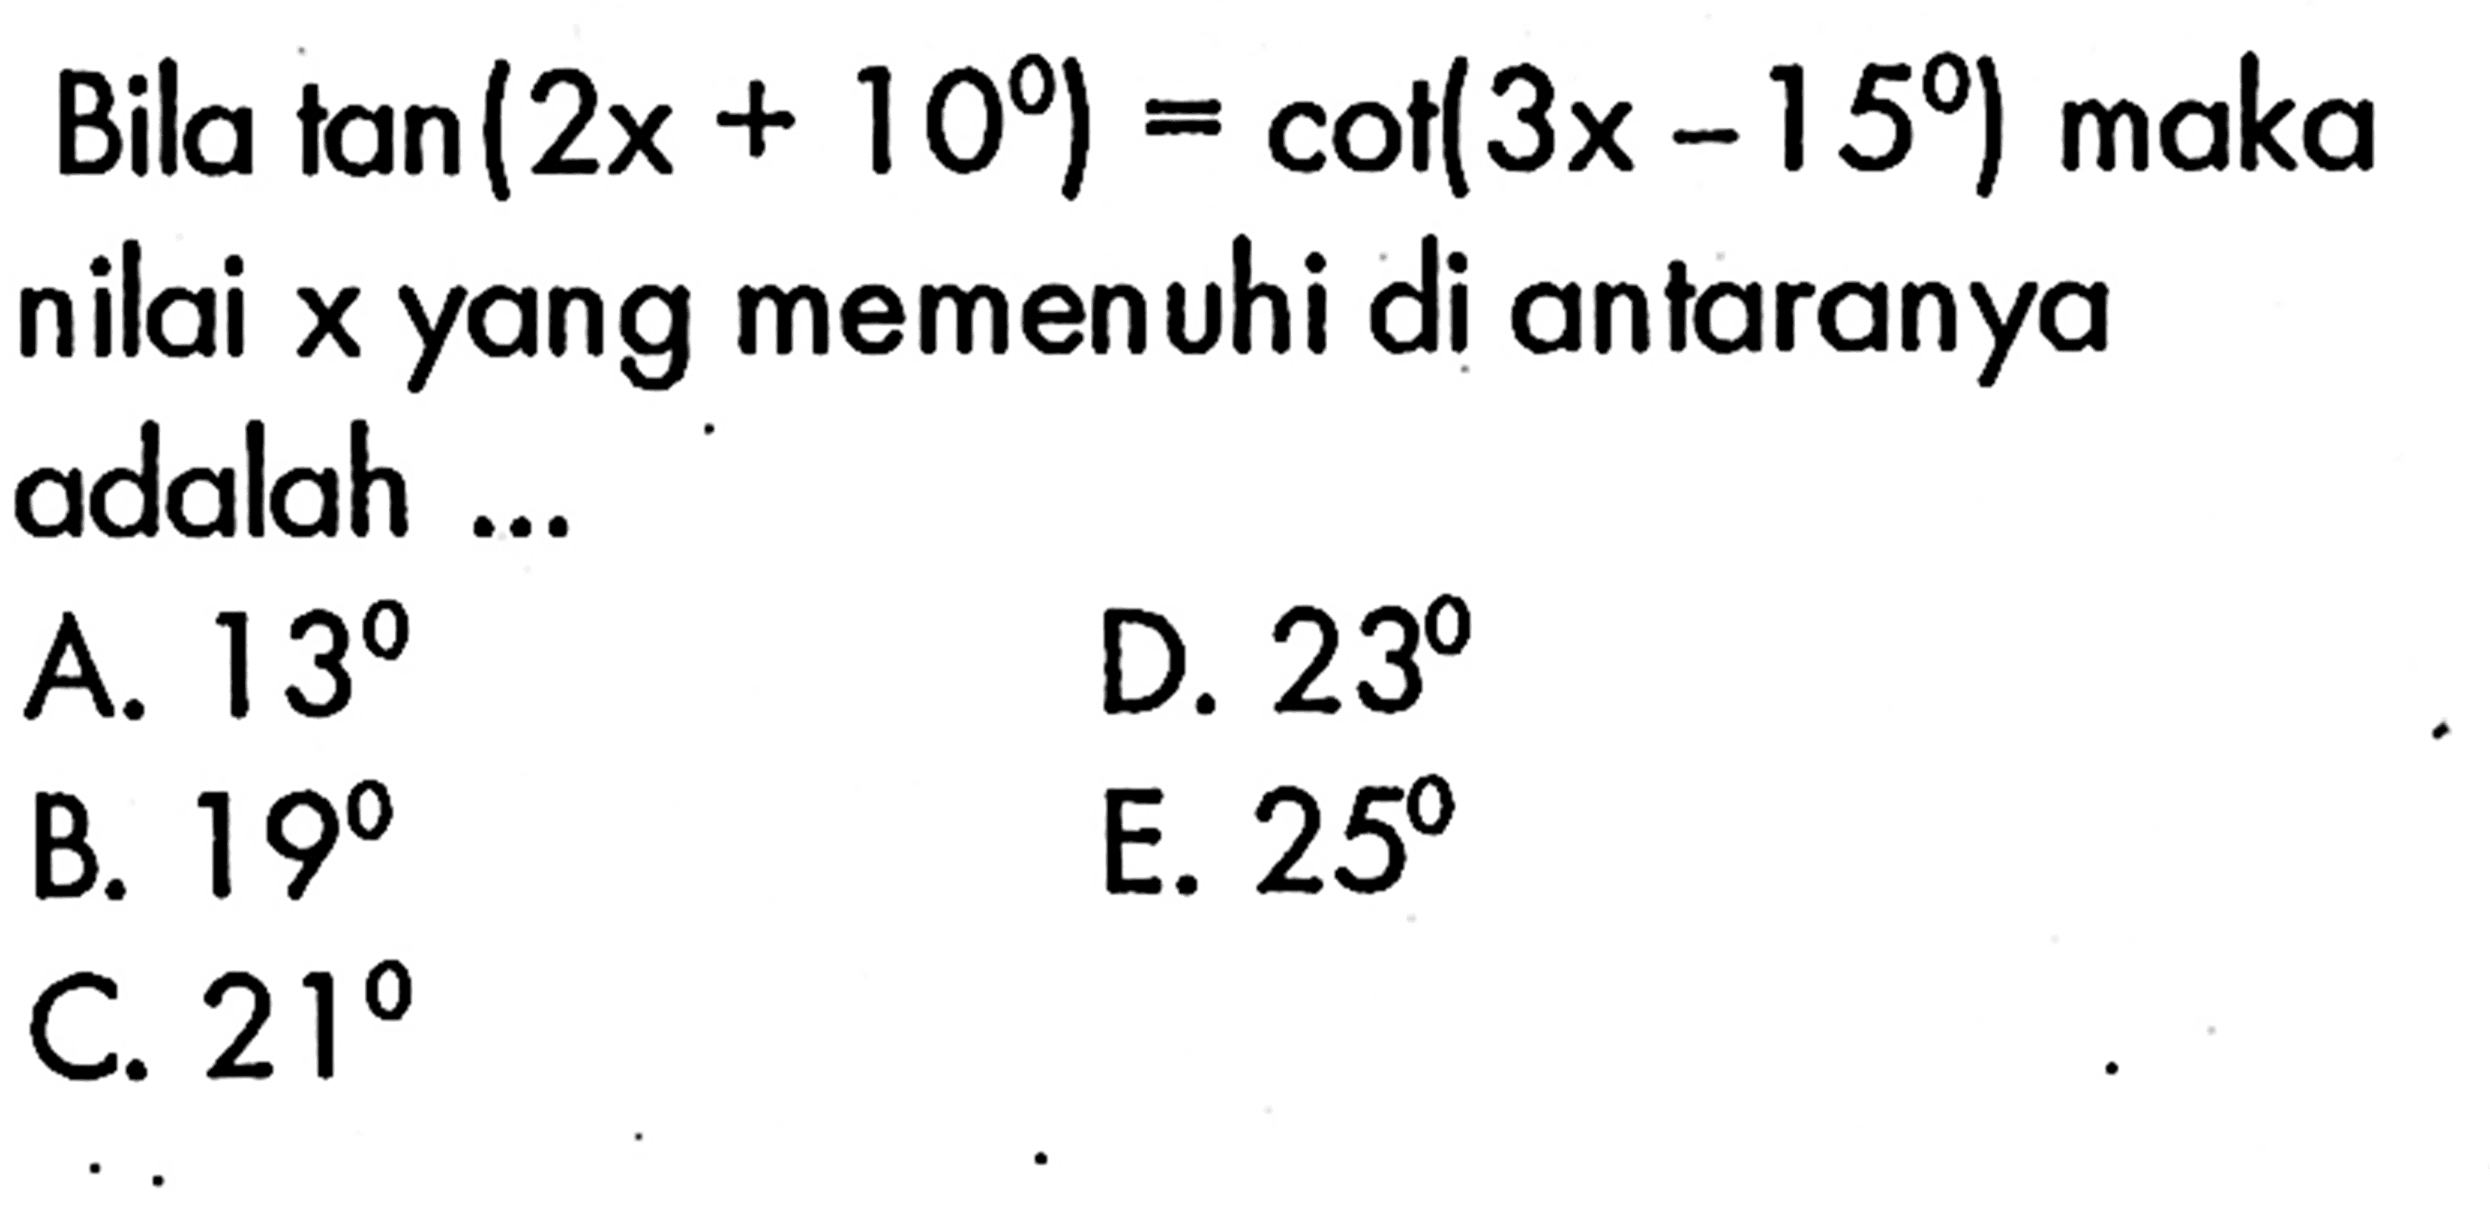 Bila  tan (2x+10)=cot (3x-15)  maka nilai x yang memenuhi di antaranya adalah ...
A.  13 
D.  23 
B.  19 
E.  25 
C.  21 